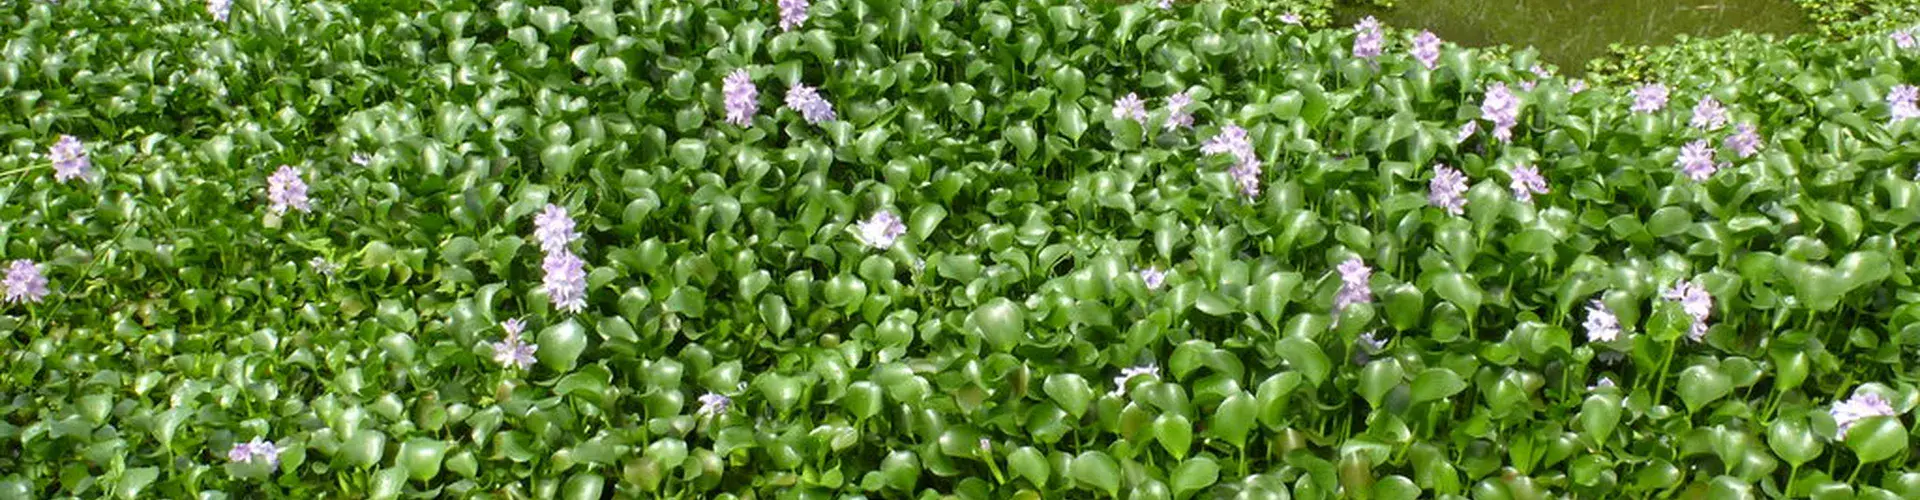 Floating hyacinth patch. Credit - Andreas Kay via flickr (CC BY-NC-SA 2.0).jpg